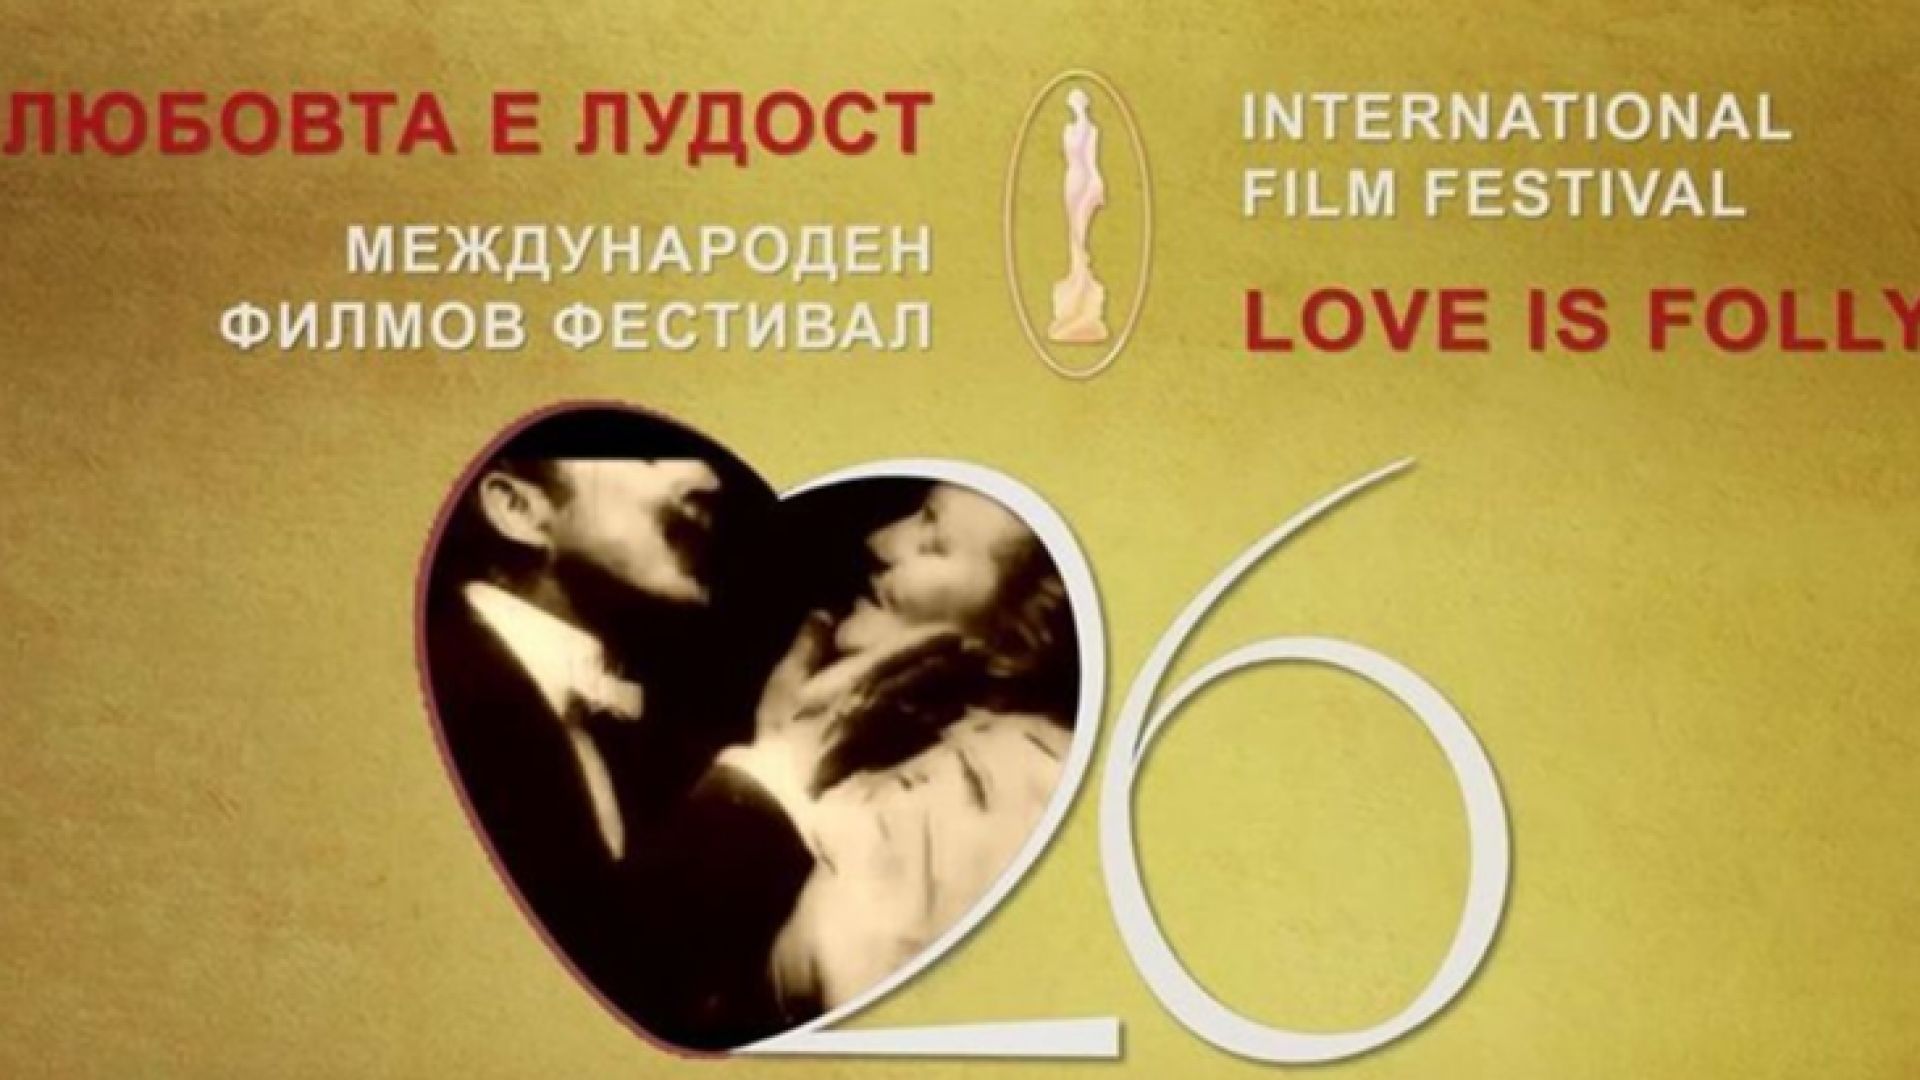 Европейски премиери на варненския кинофест "Любовта е лудост"